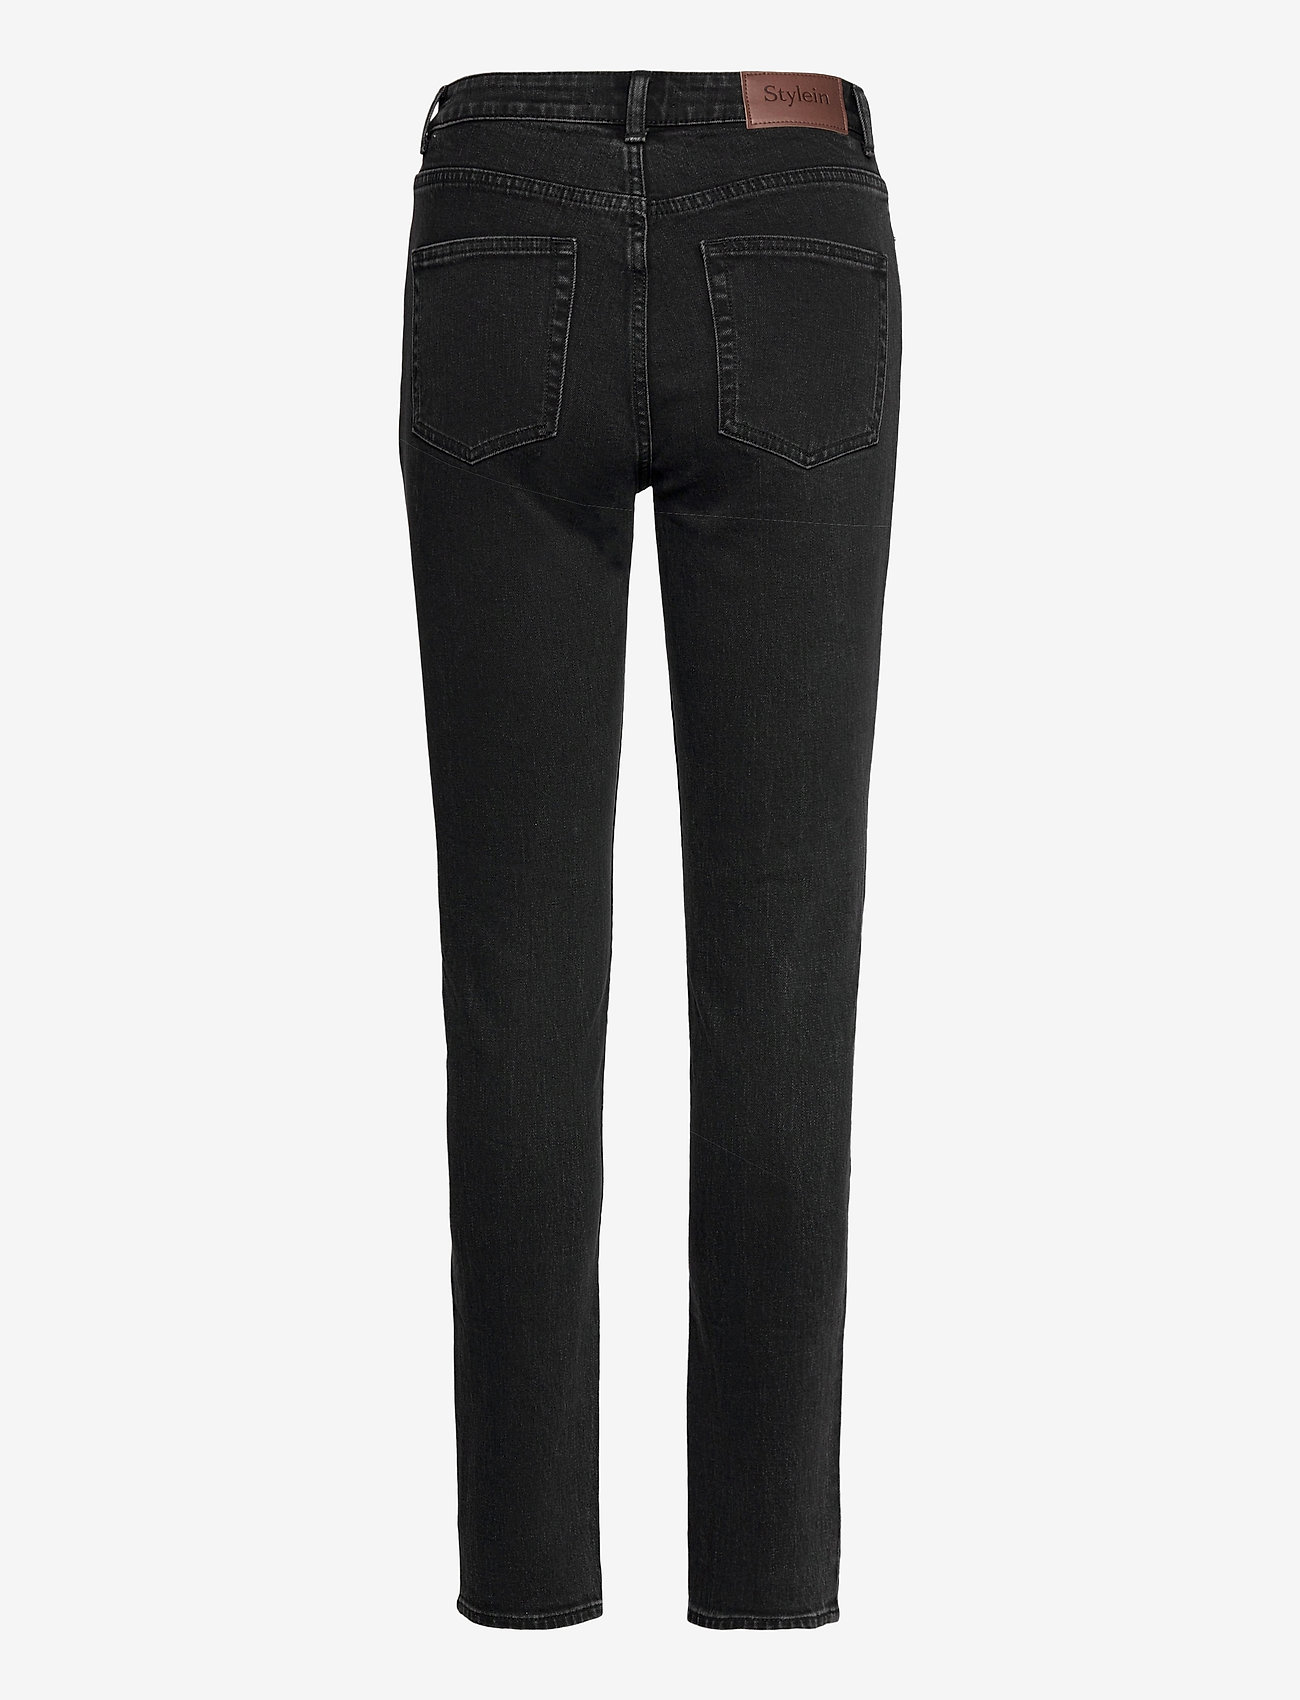 Stylein - KATIE DENIM - slim jeans - black - 2